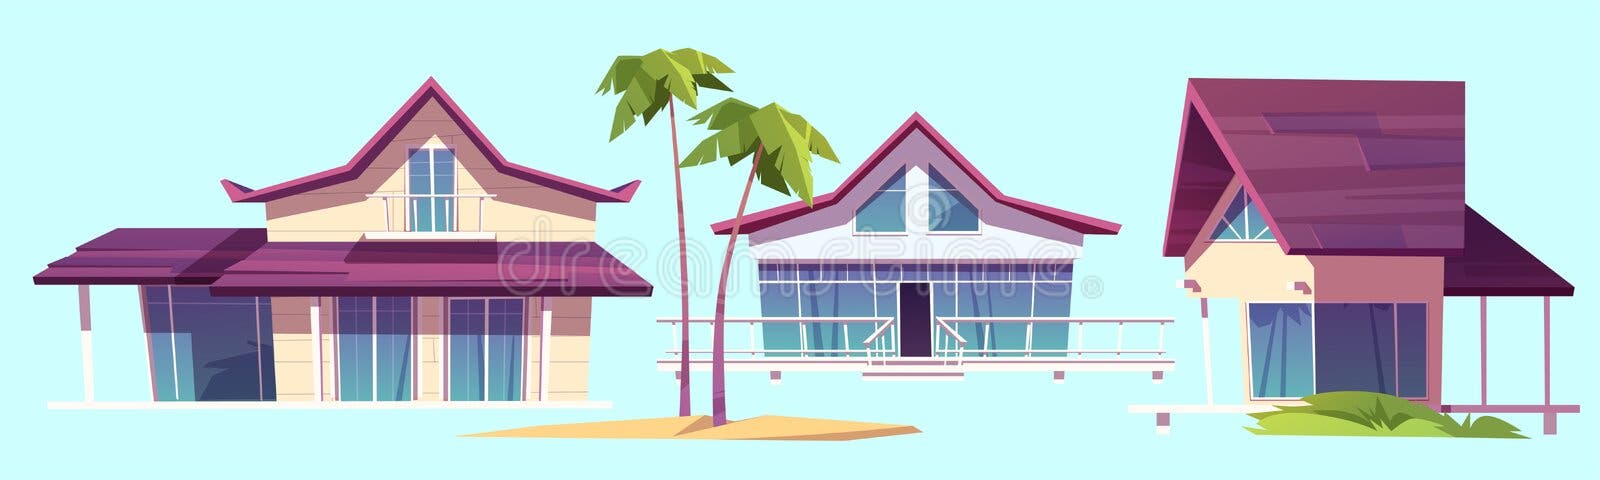  Casas De Verano Bungalows En Playa De Mar Ilustración del Vector